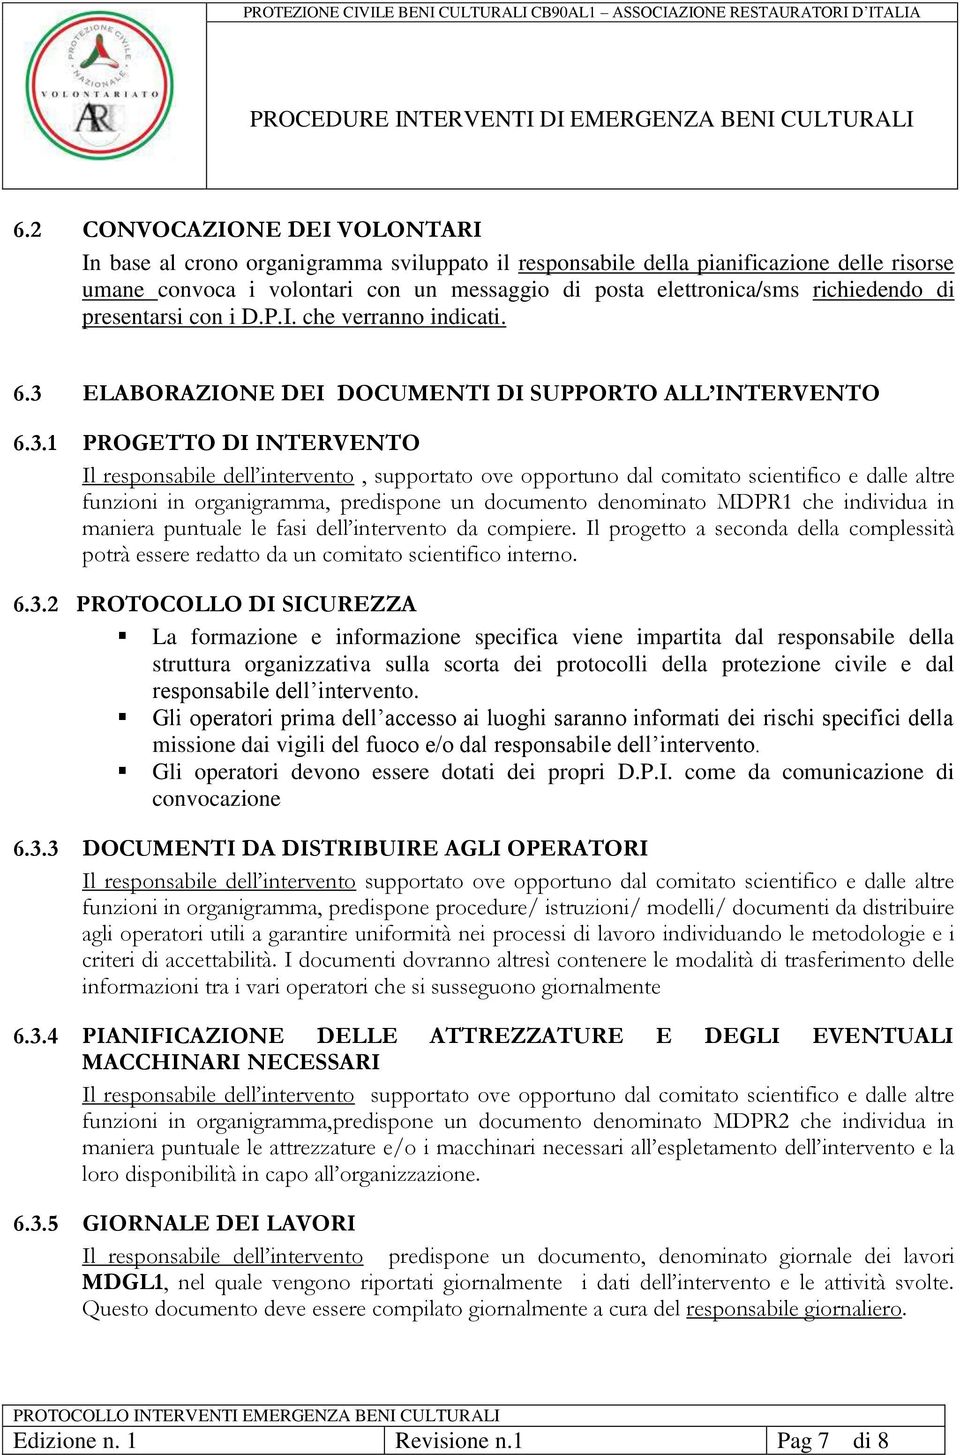 ELABORAZIONE DEI DOCUMENTI DI SUPPORTO ALL INTERVENTO 6.3.